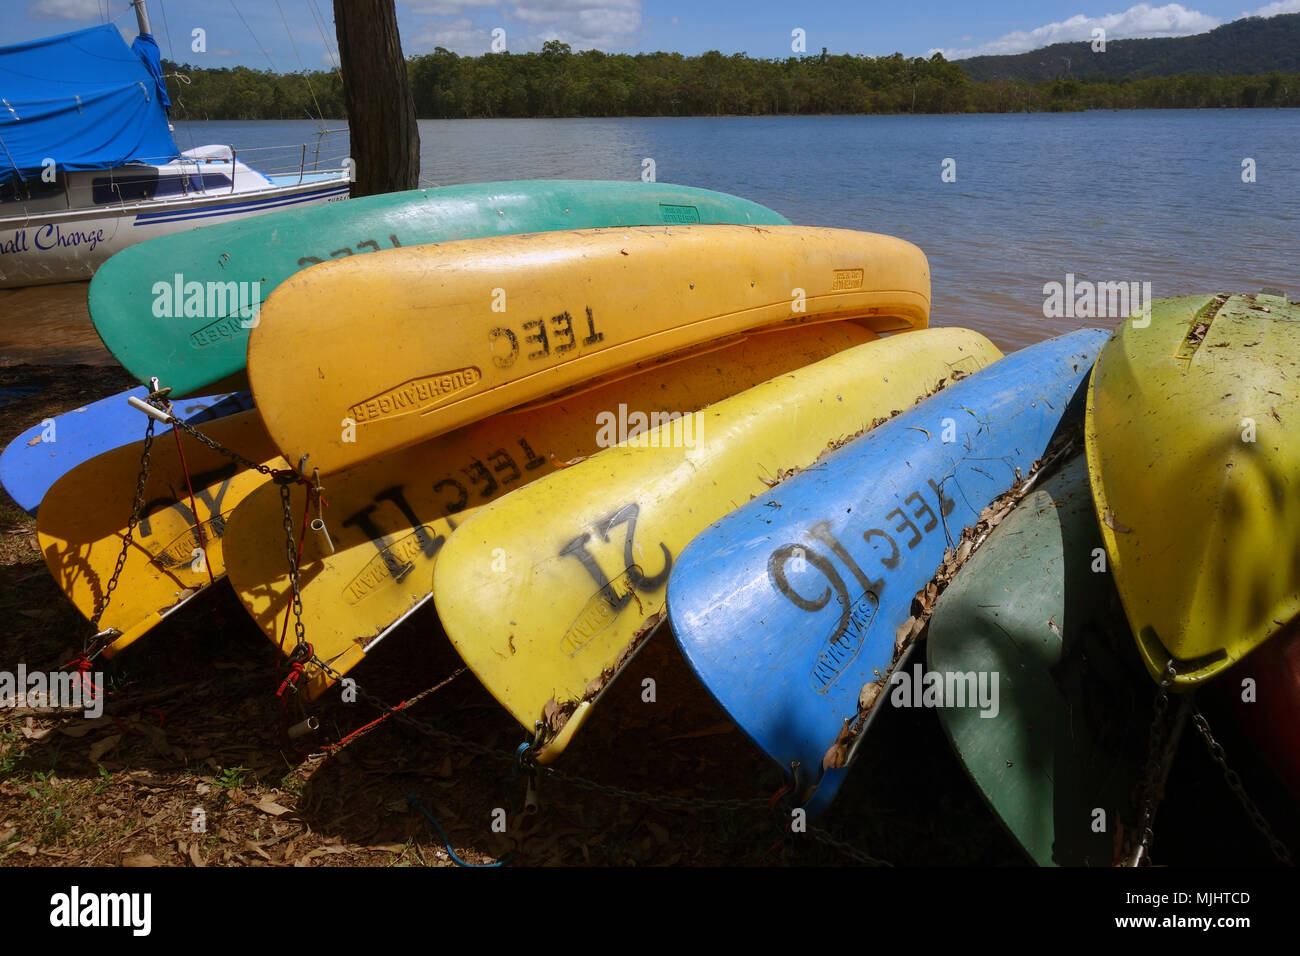 Canoe appartenenti a Tinaroo Centro di Educazione Ambientale sulle rive del lago Tinaroo, altopiano di Atherton, Queensland, Australia. N. PR Foto Stock